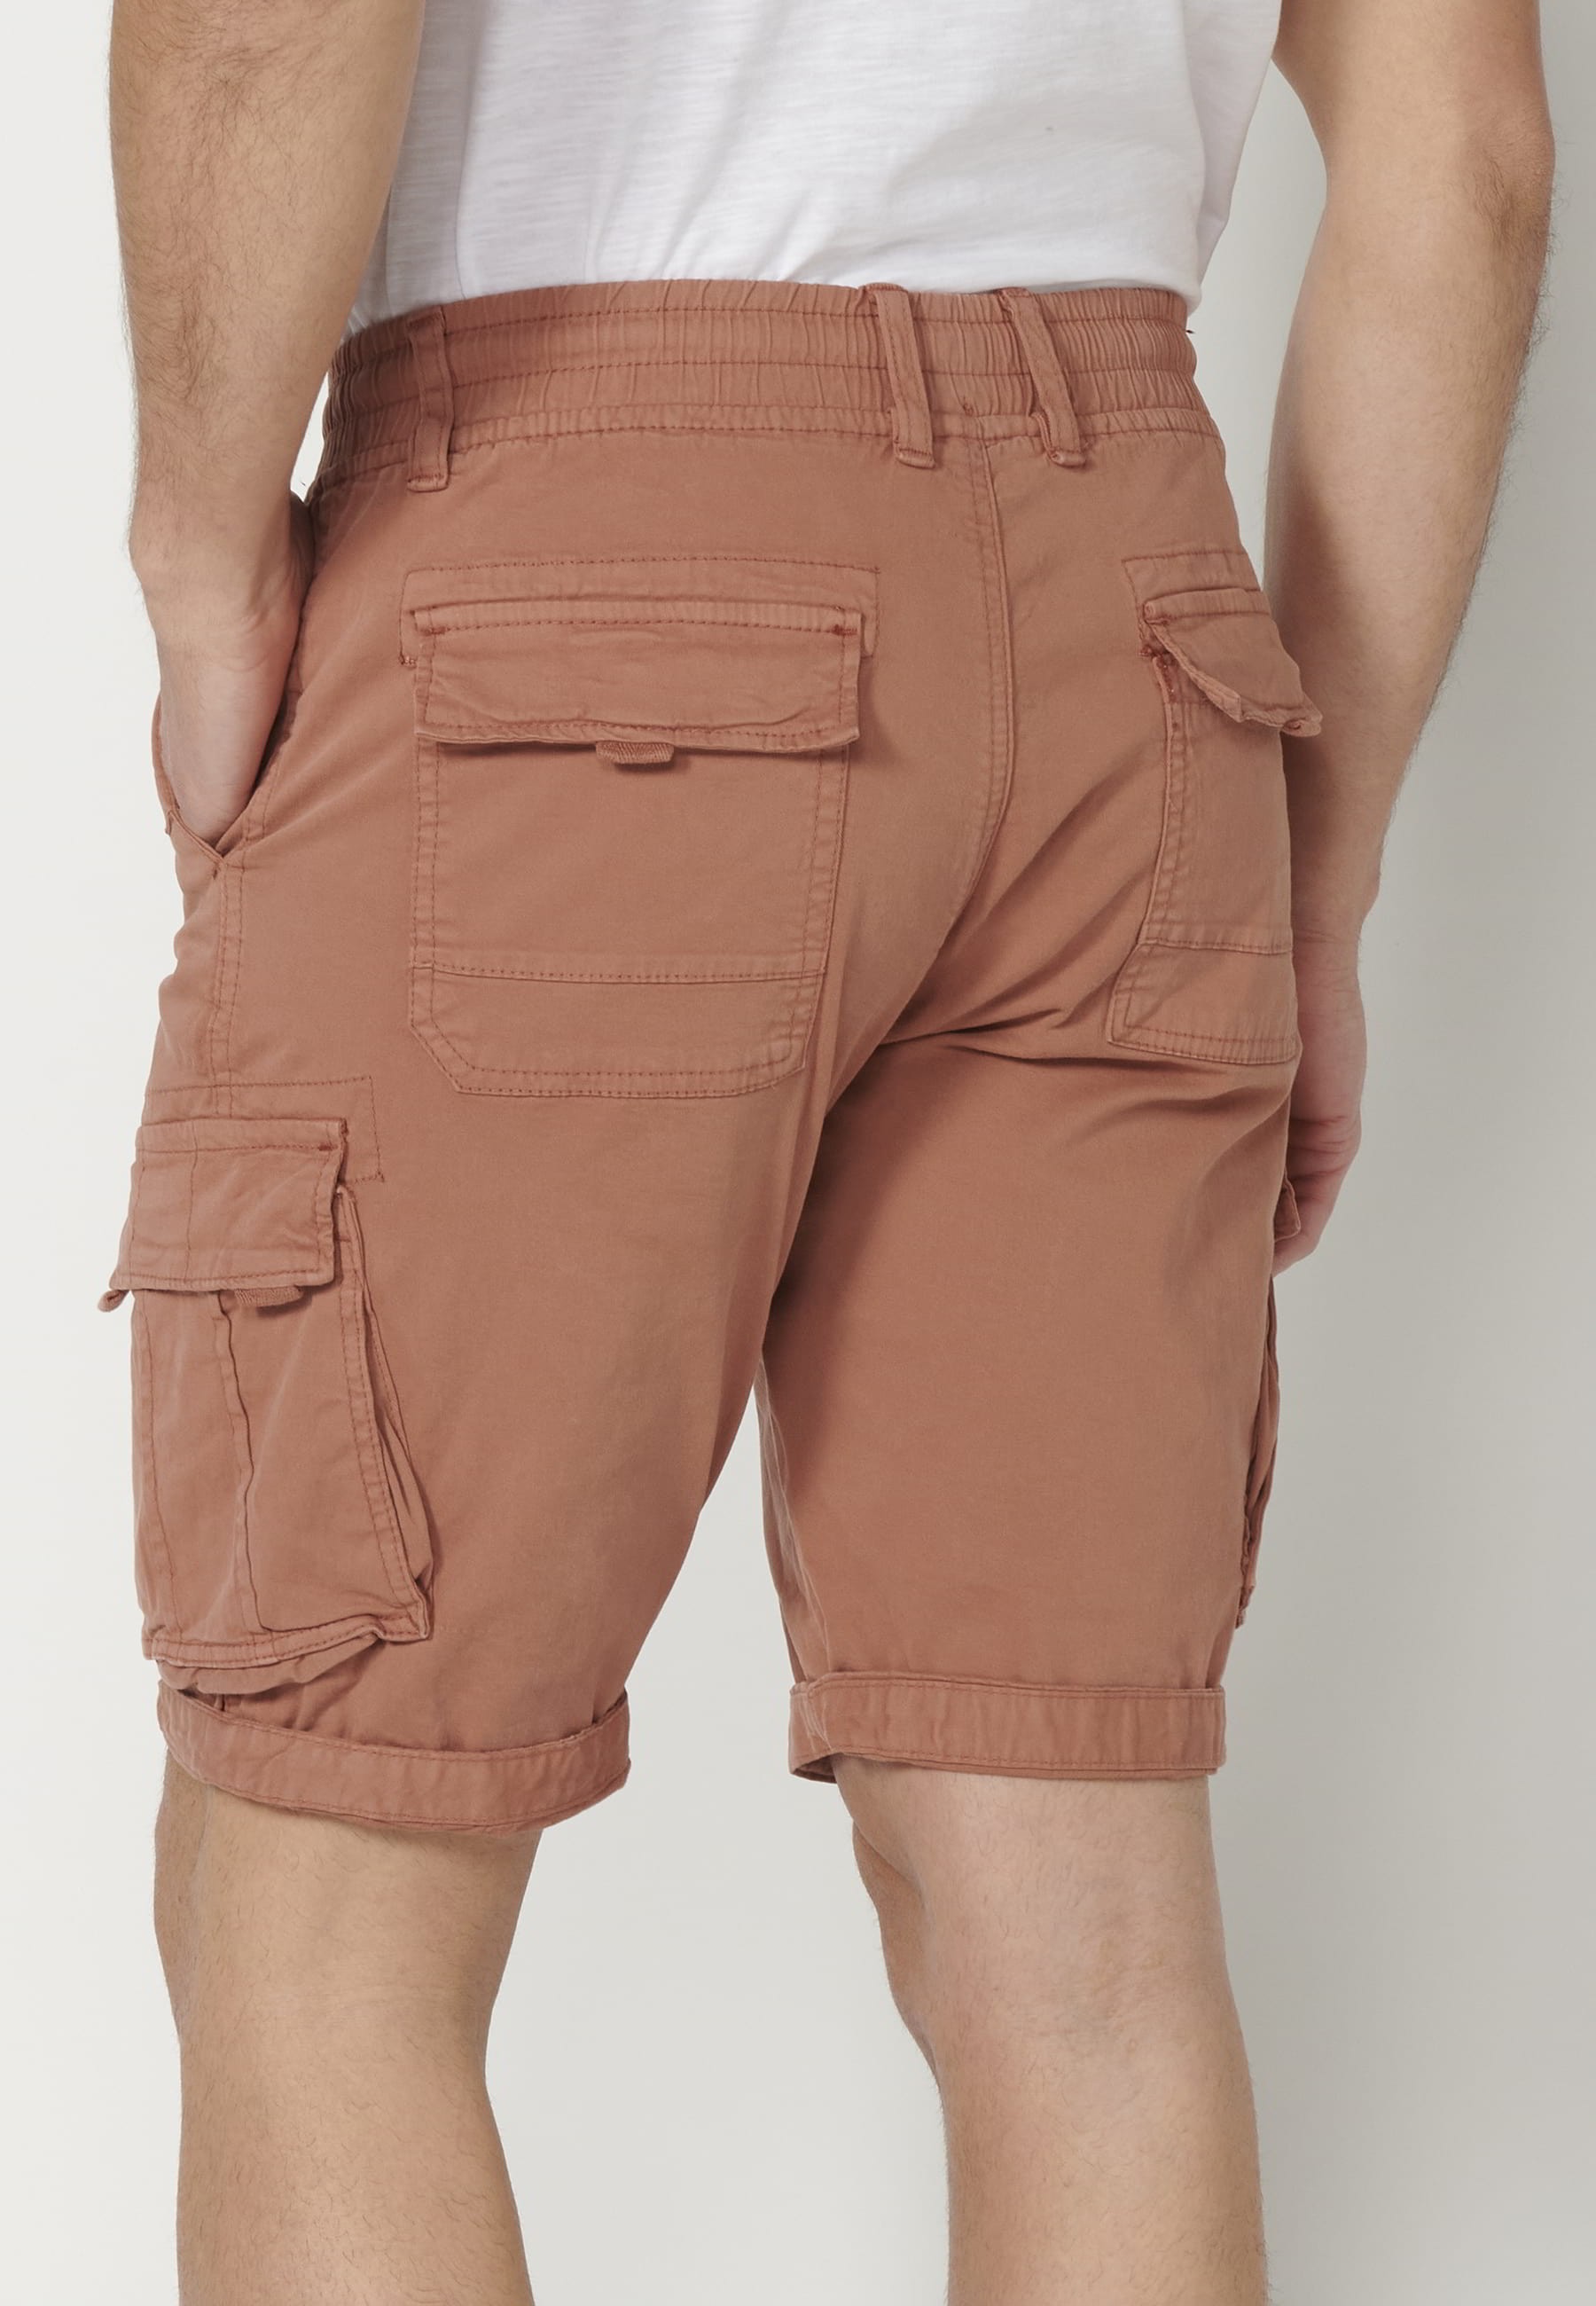 Pantalón corto Bermuda estilo cargo color Teja para Hombre